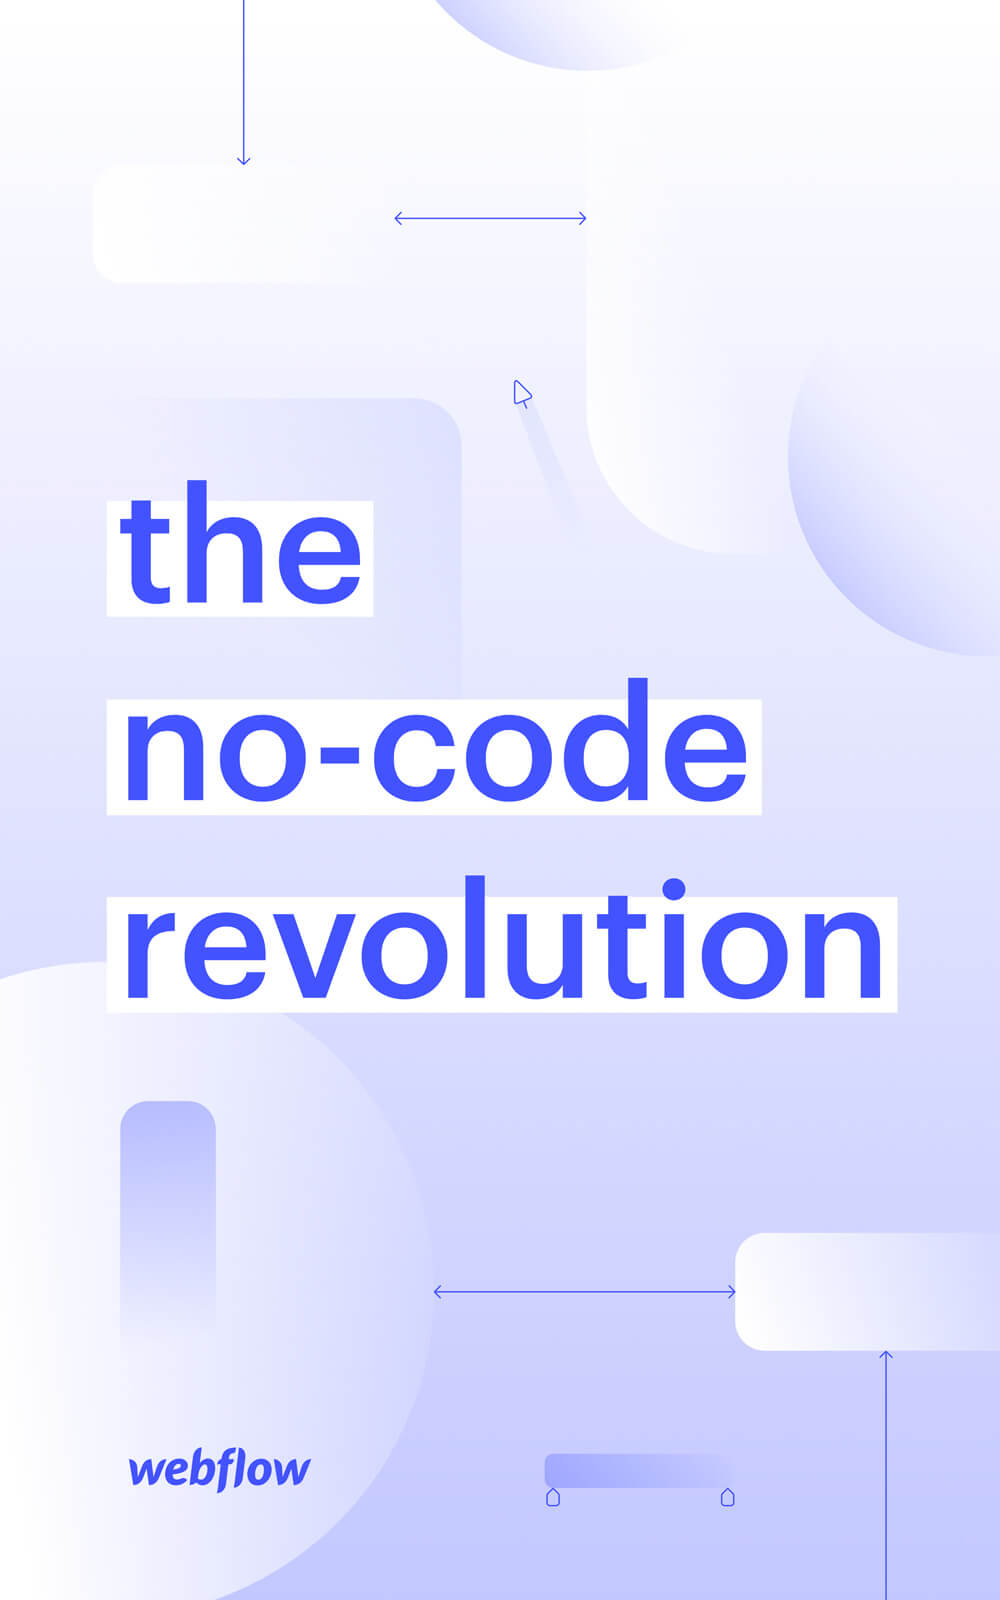 The no-code revolution